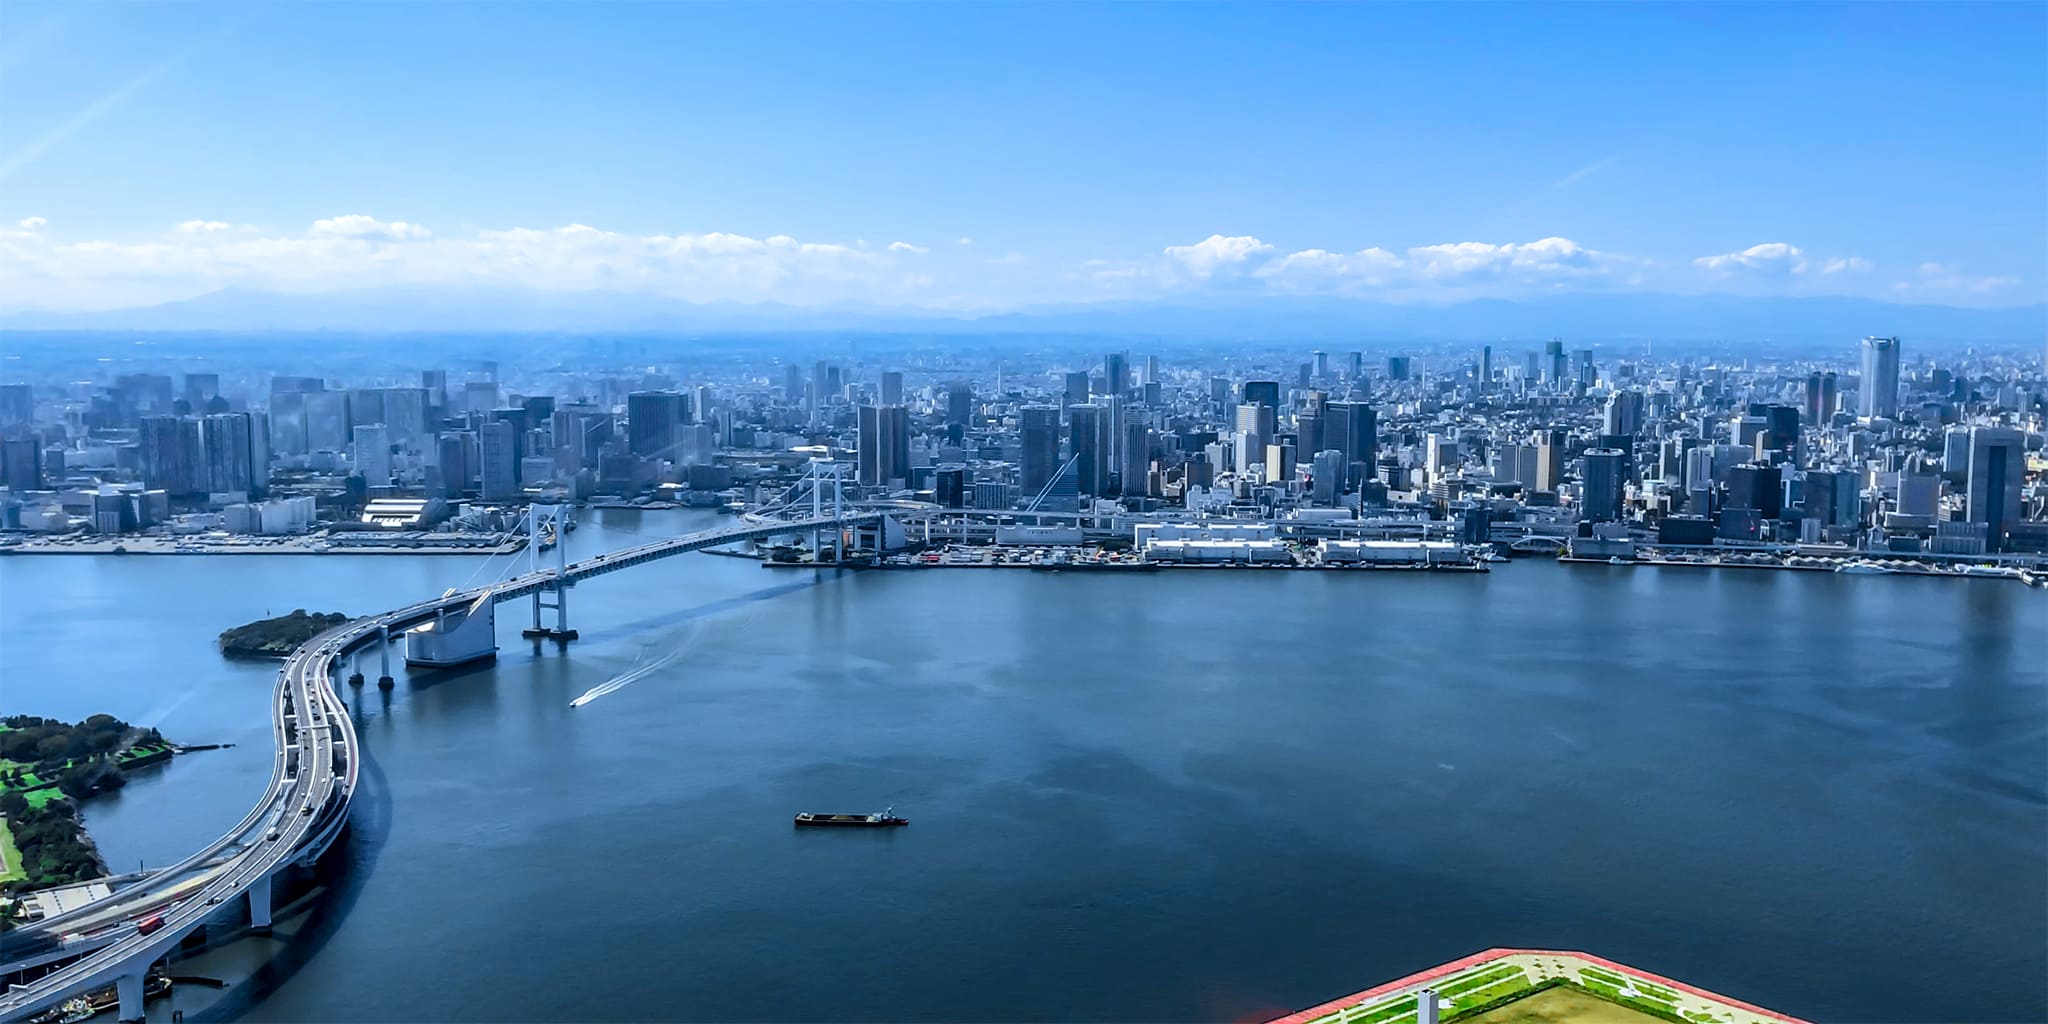 ヘリコプターで東京上空をフライトして見える東京レインボーブリッジ